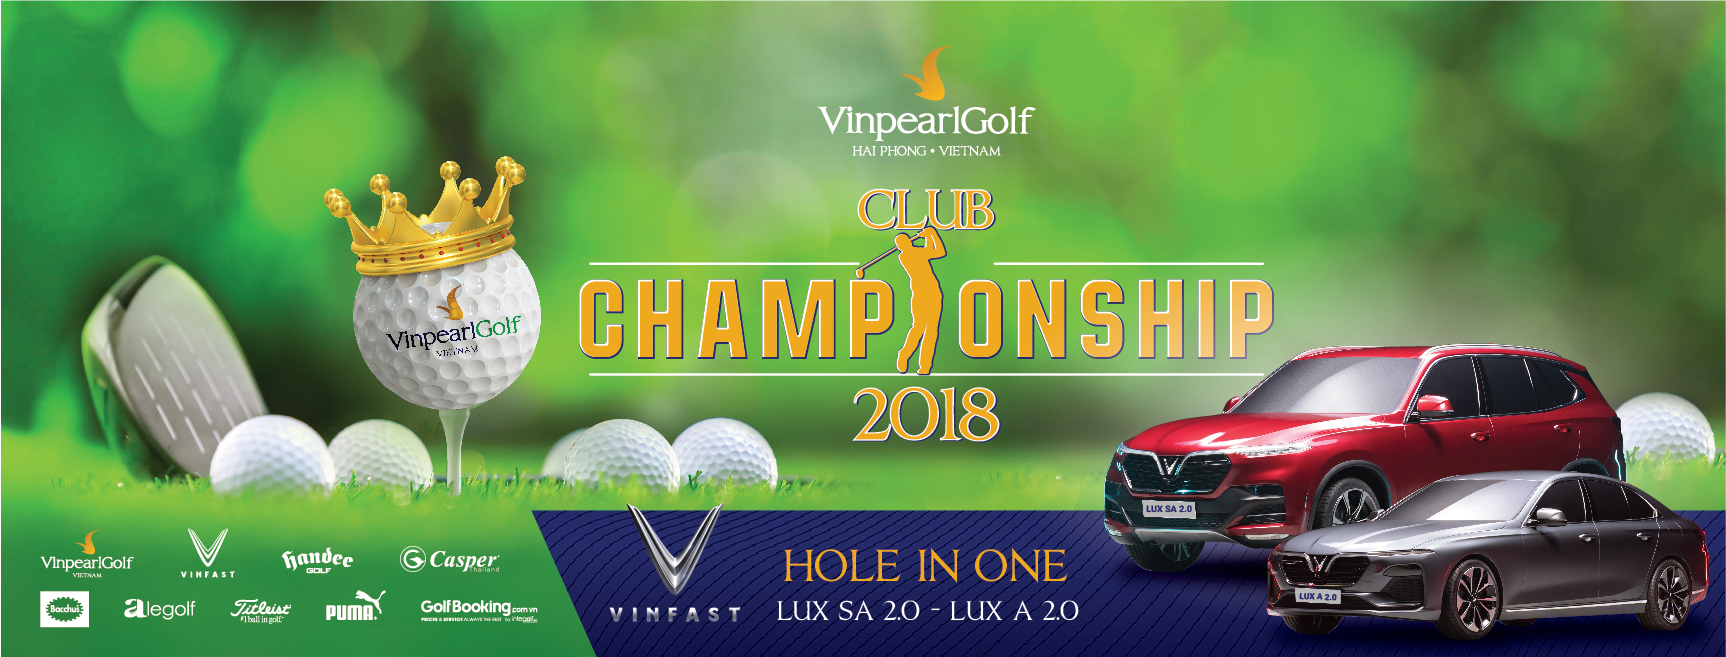 Giải 'Vinpearl Golf Hải Phòng Club Championship 2018' chuẩn bị khởi tranh